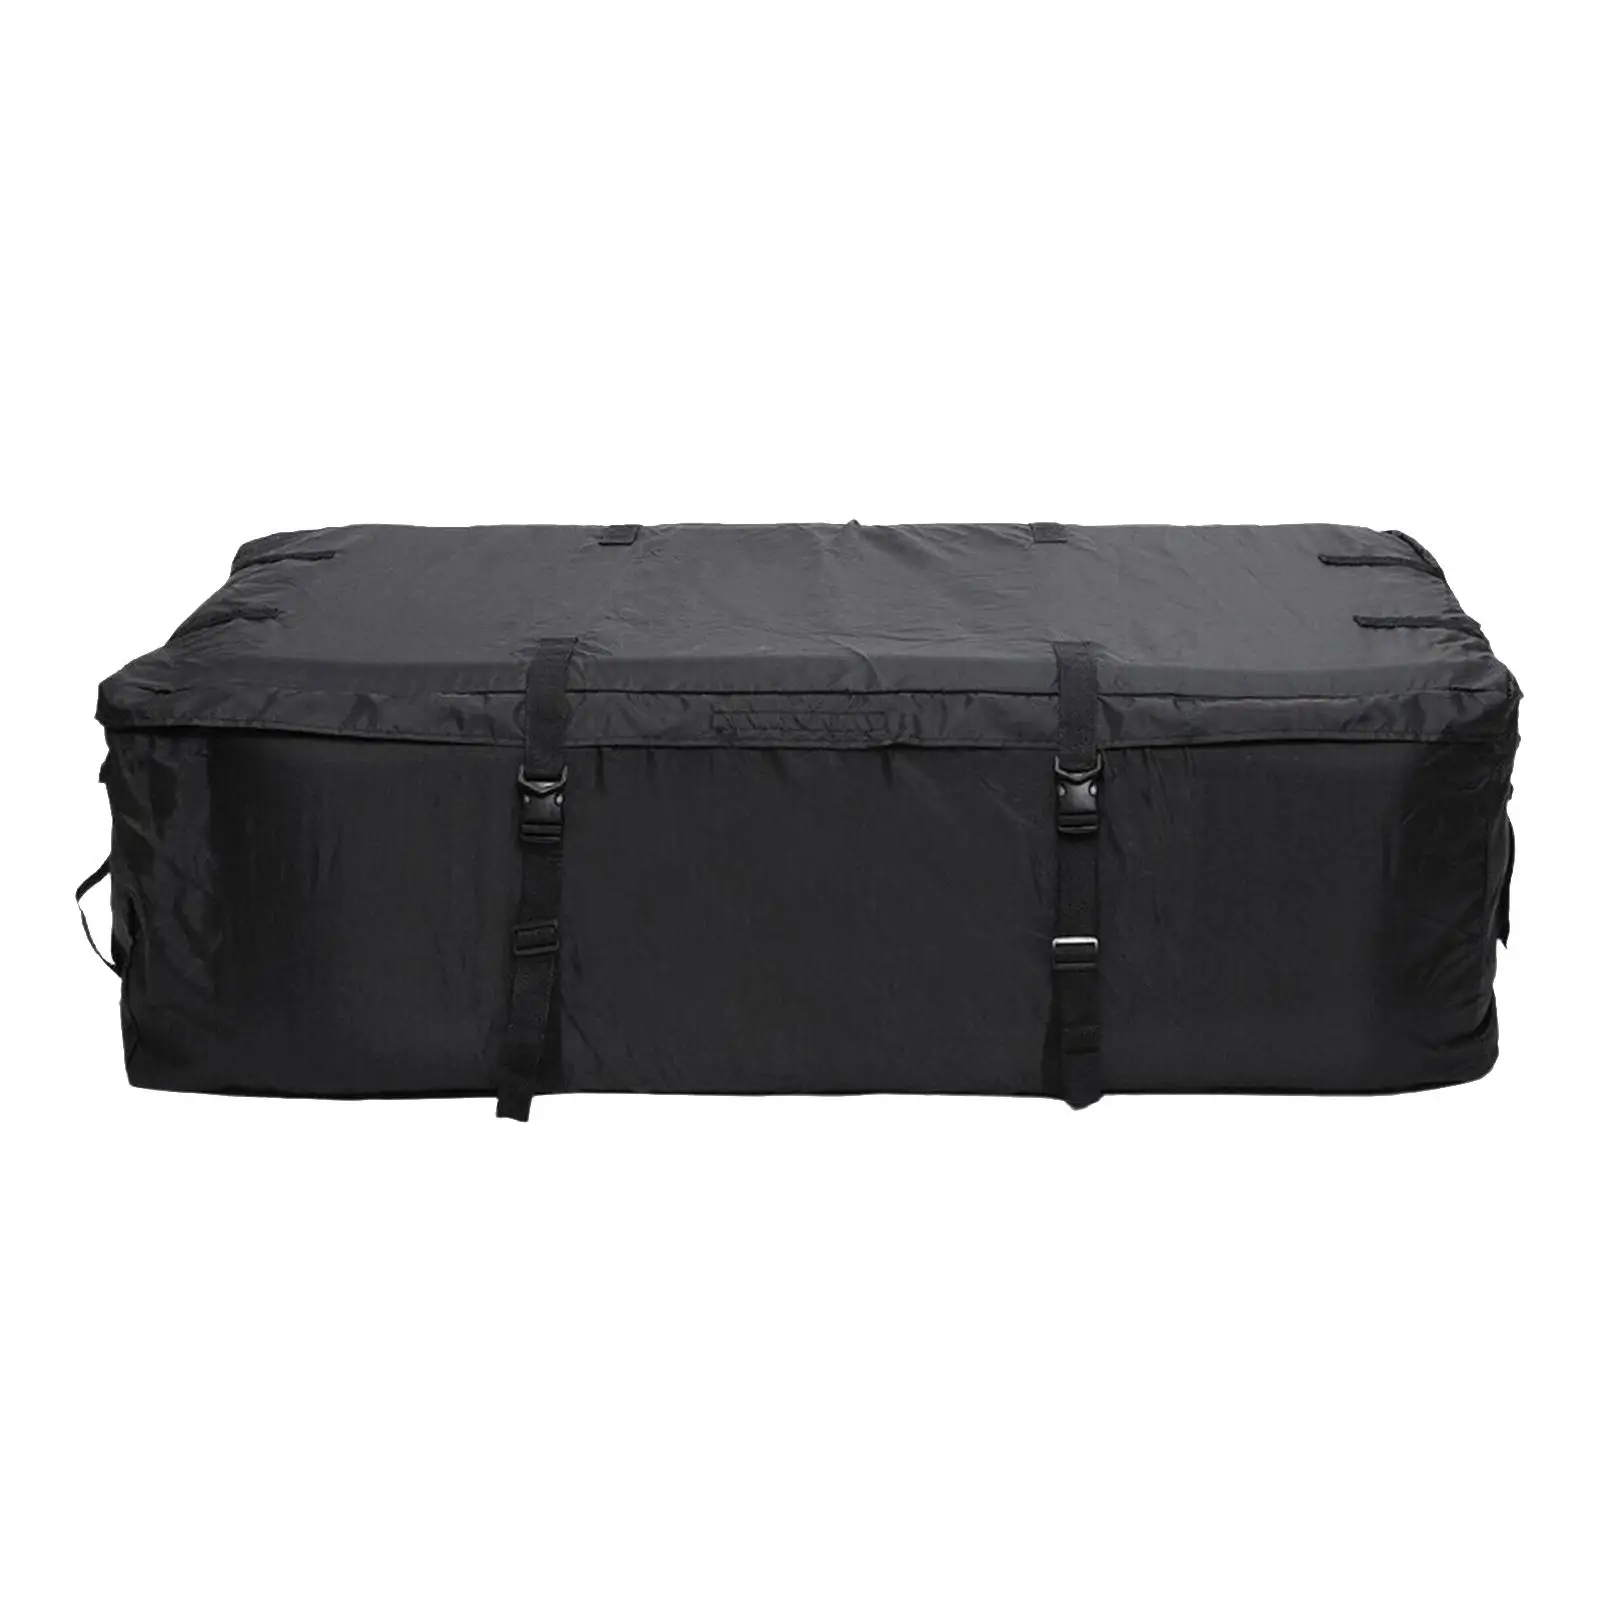 Waterproof Car Roof Top Rack Bag Carrier Travel Luggage Cargo Storage